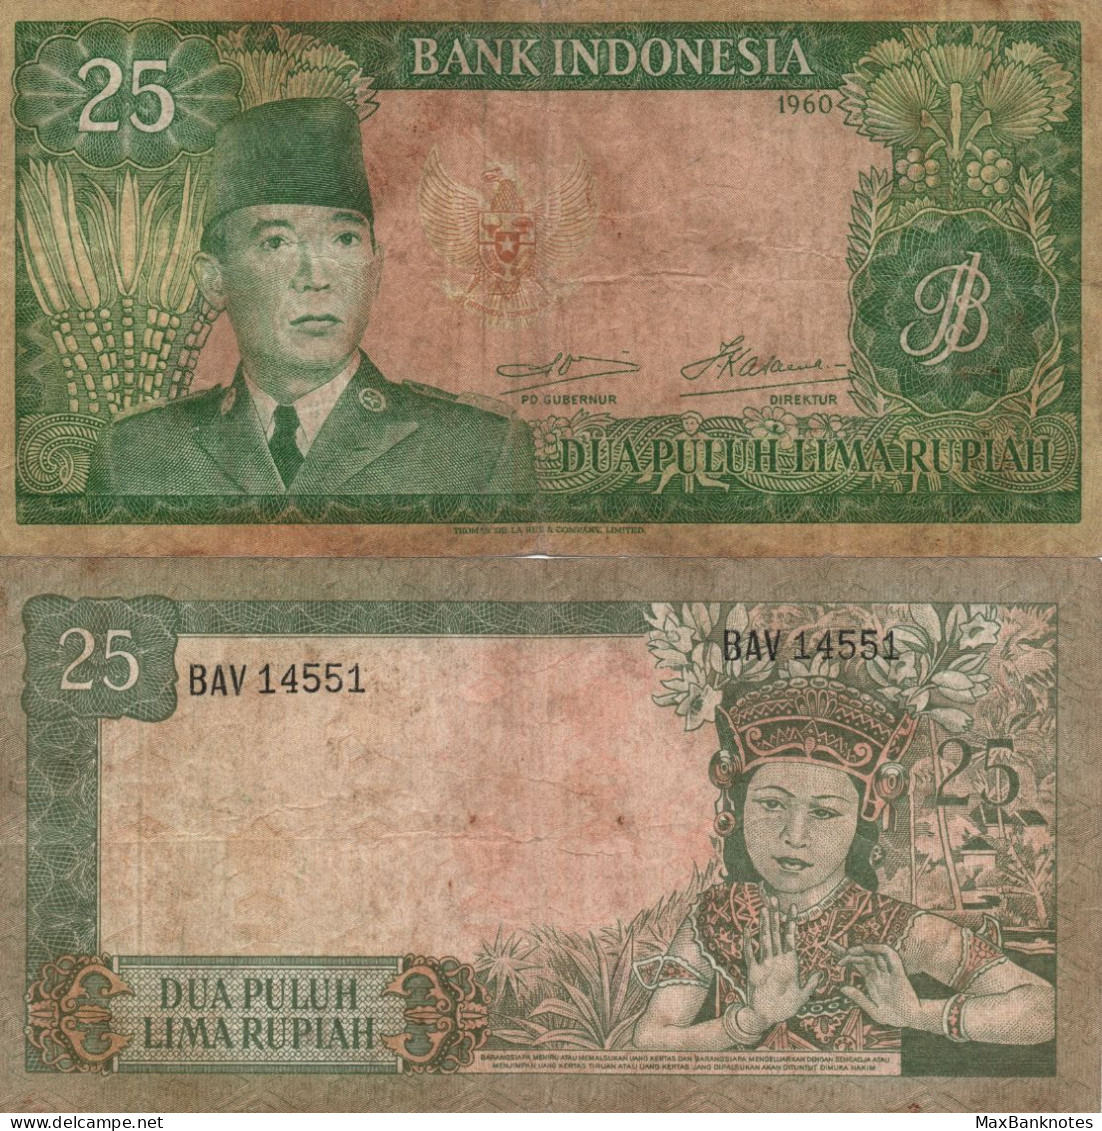 Indonesia / 25 Rupiah / 1960 / P-84(a) / FI - Indonesien